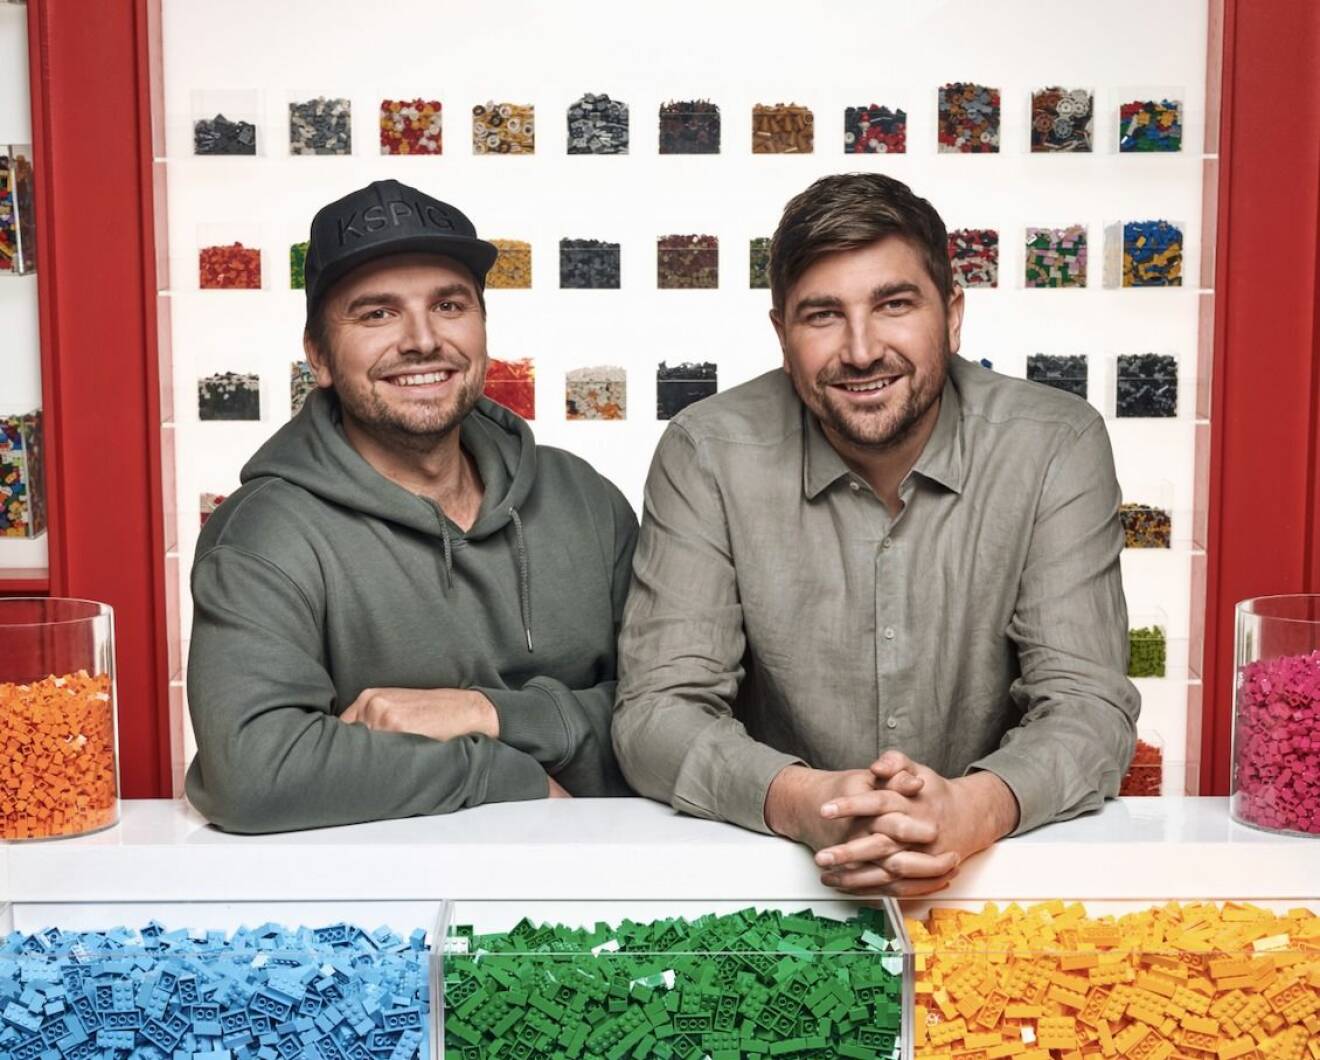 Viktor Juholt och Anton Juholt i Lego masters Sverige 2021